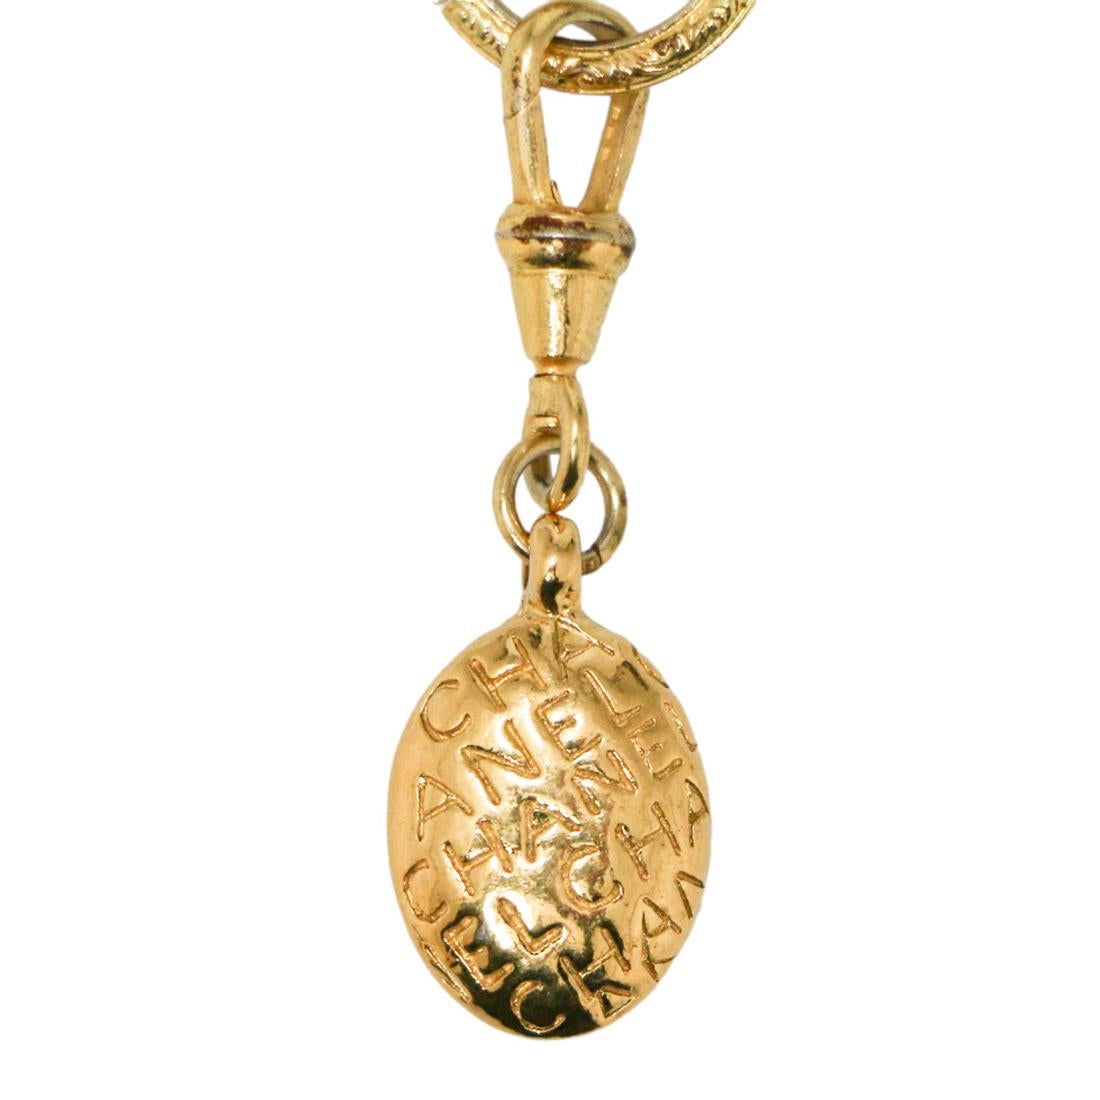 Wunderschönes Vintage-Goldarmband von Chanel, dreifacher Strang

Zustand: sehr gut
Hergestellt in Frankreich
Modell: dreifach gestreifter Armreif
MATERIAL: Metall
Farbe: gold
Abmessungen: Maximale Breite des Handgelenks 18 cm
Stempel: ja
Jahr: